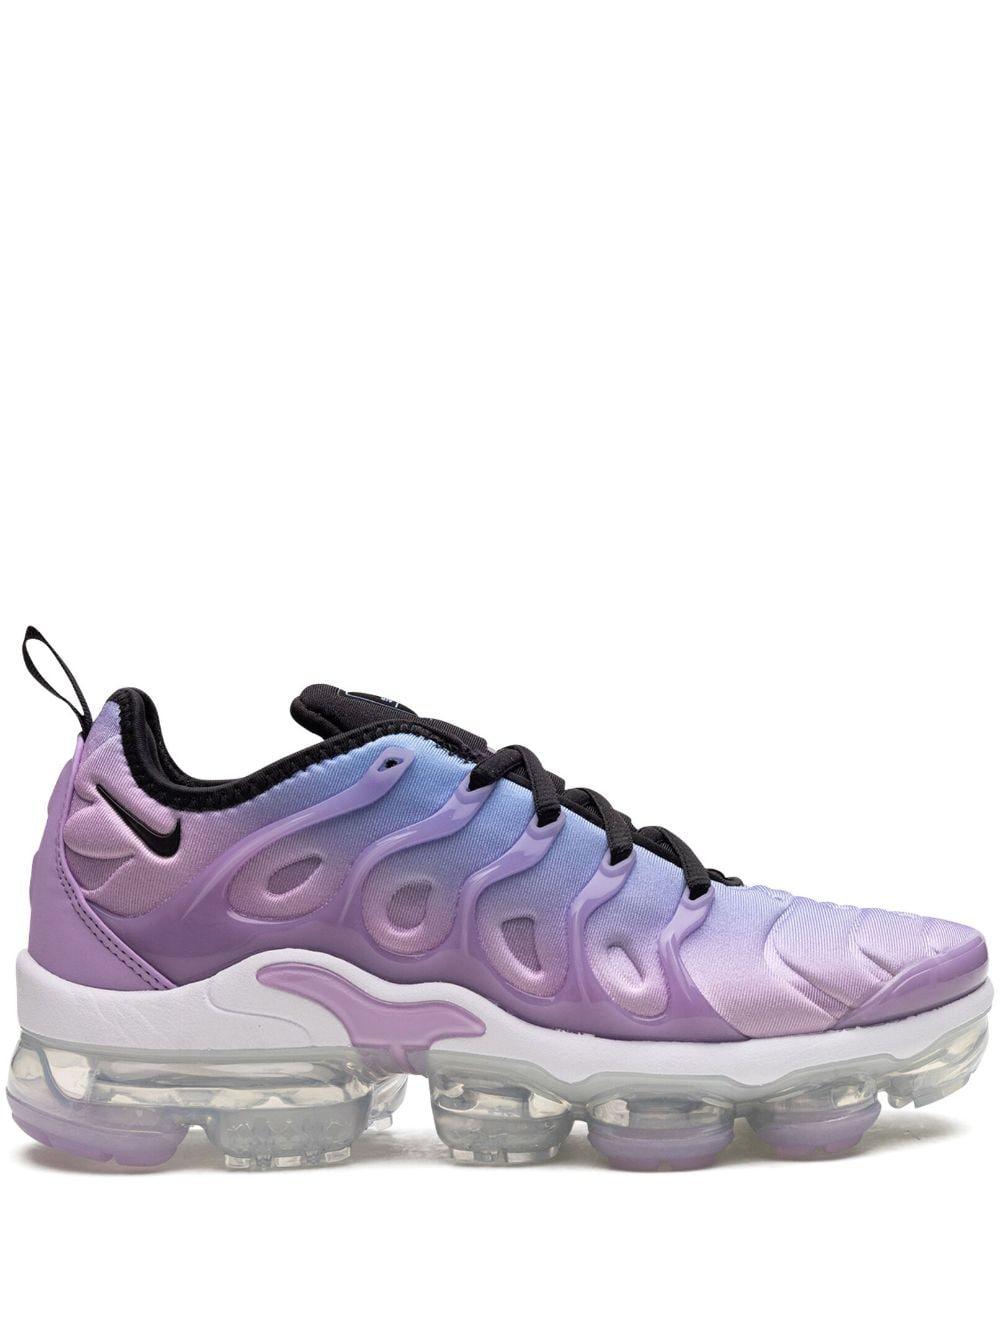 Nike Air Vapormax Plus Sneakers in Purple | Lyst